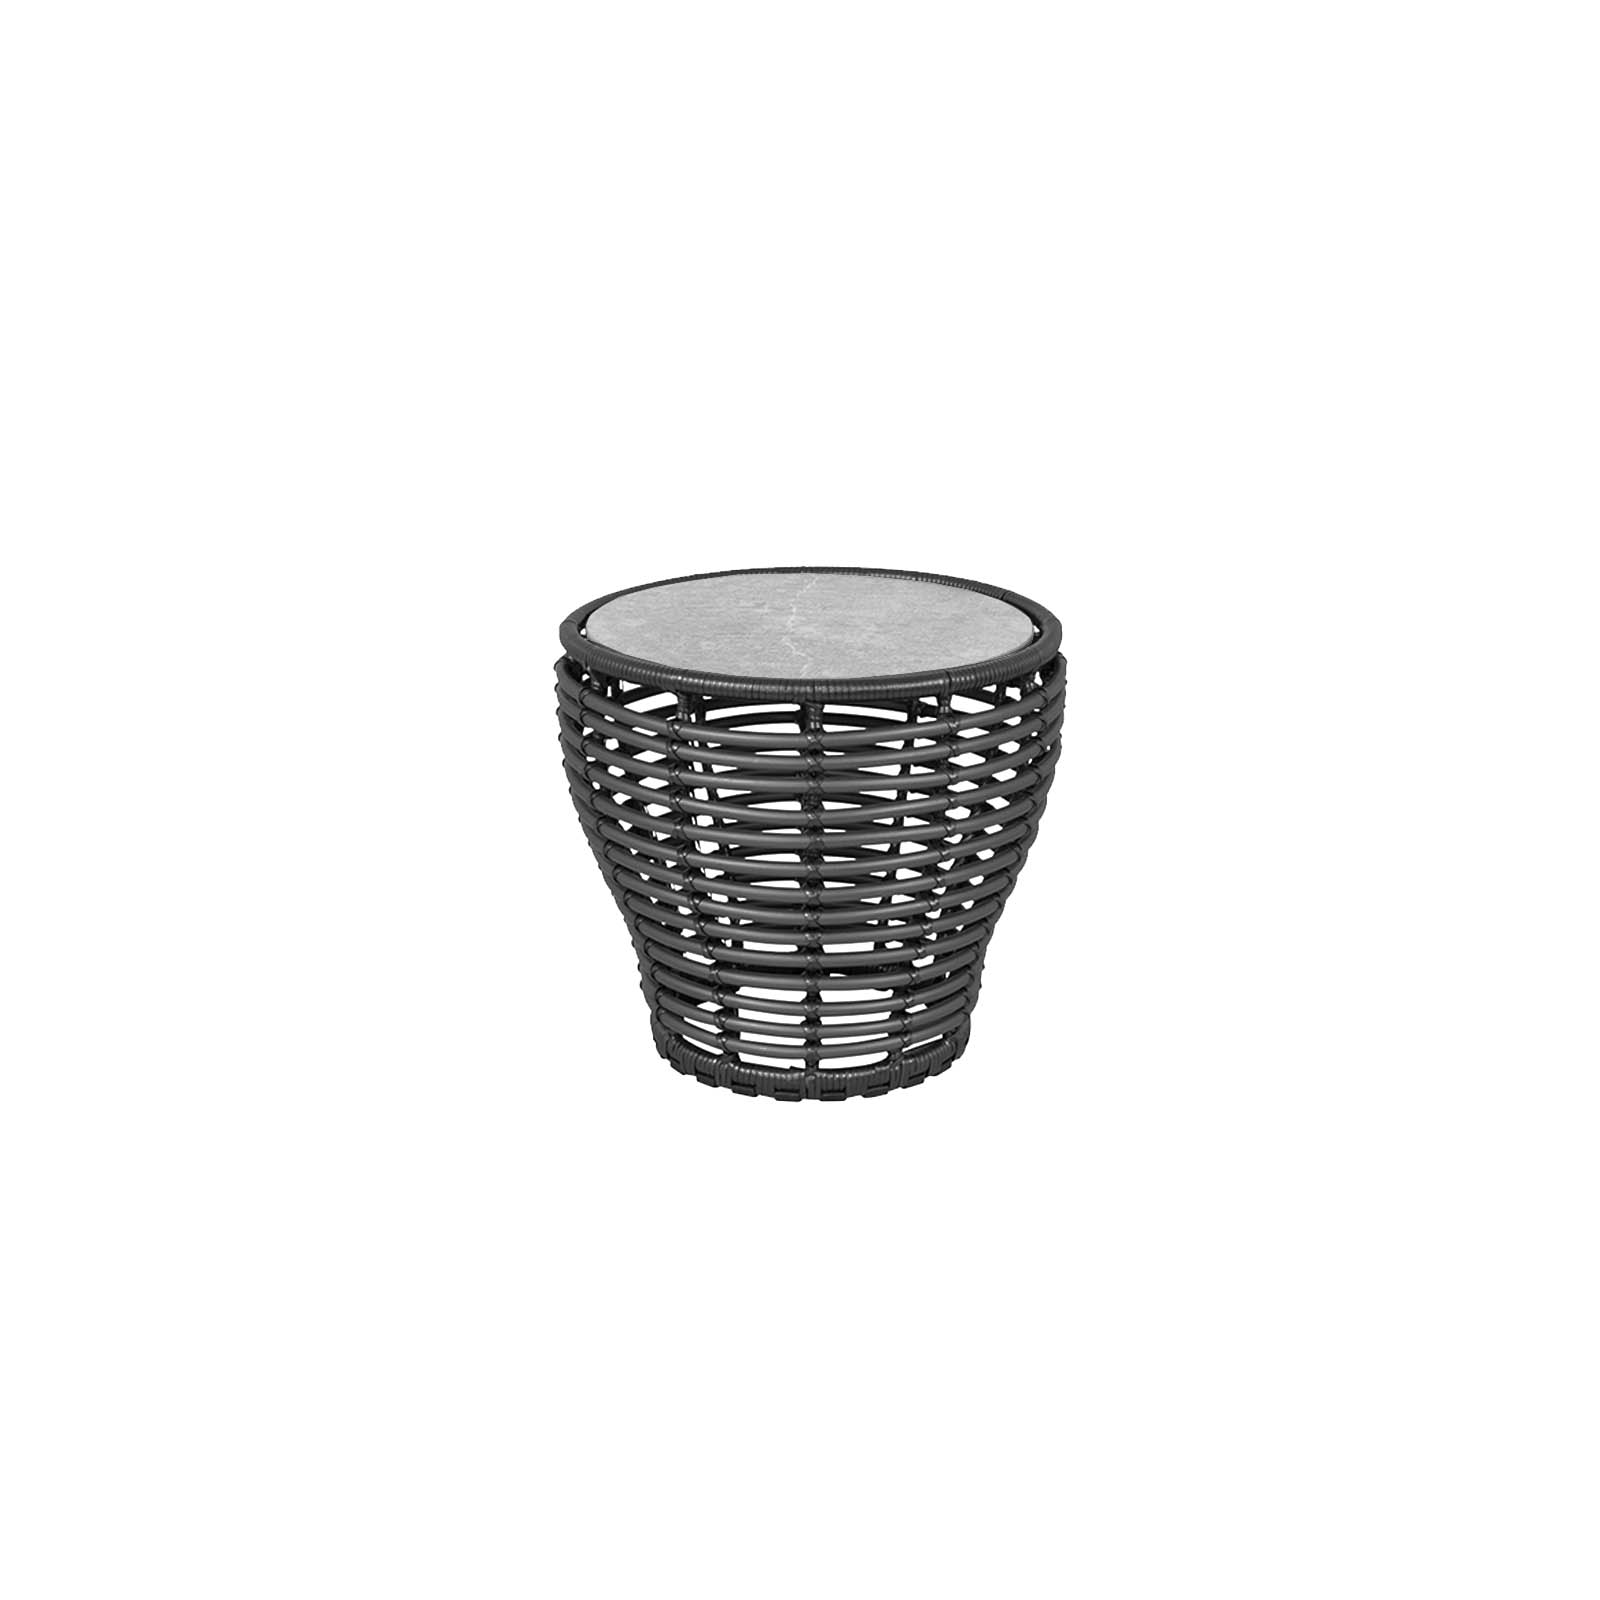 Couchtisch klein Basket aus CL Weave in Graphite mit Tischplatte aus Ceramic in Fossil grey